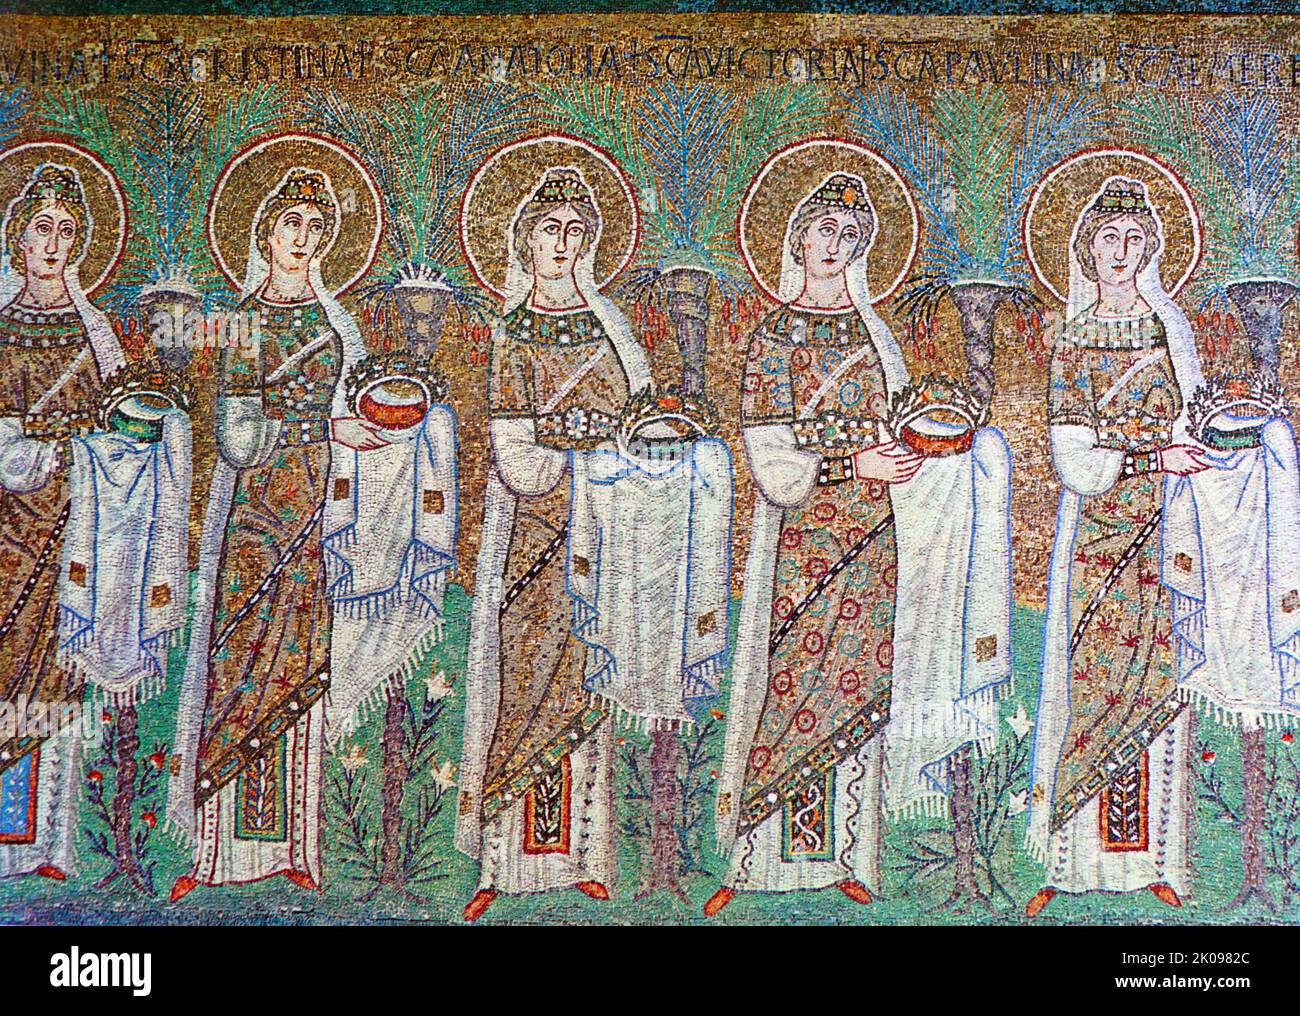 l'imperatrice Teodora Ravenna, San Vitale. Theodora (c. 500 - Konstantinopel, 28. Juni 548) war eine byzantinische Kaiserin. Mozaisch. Stockfoto